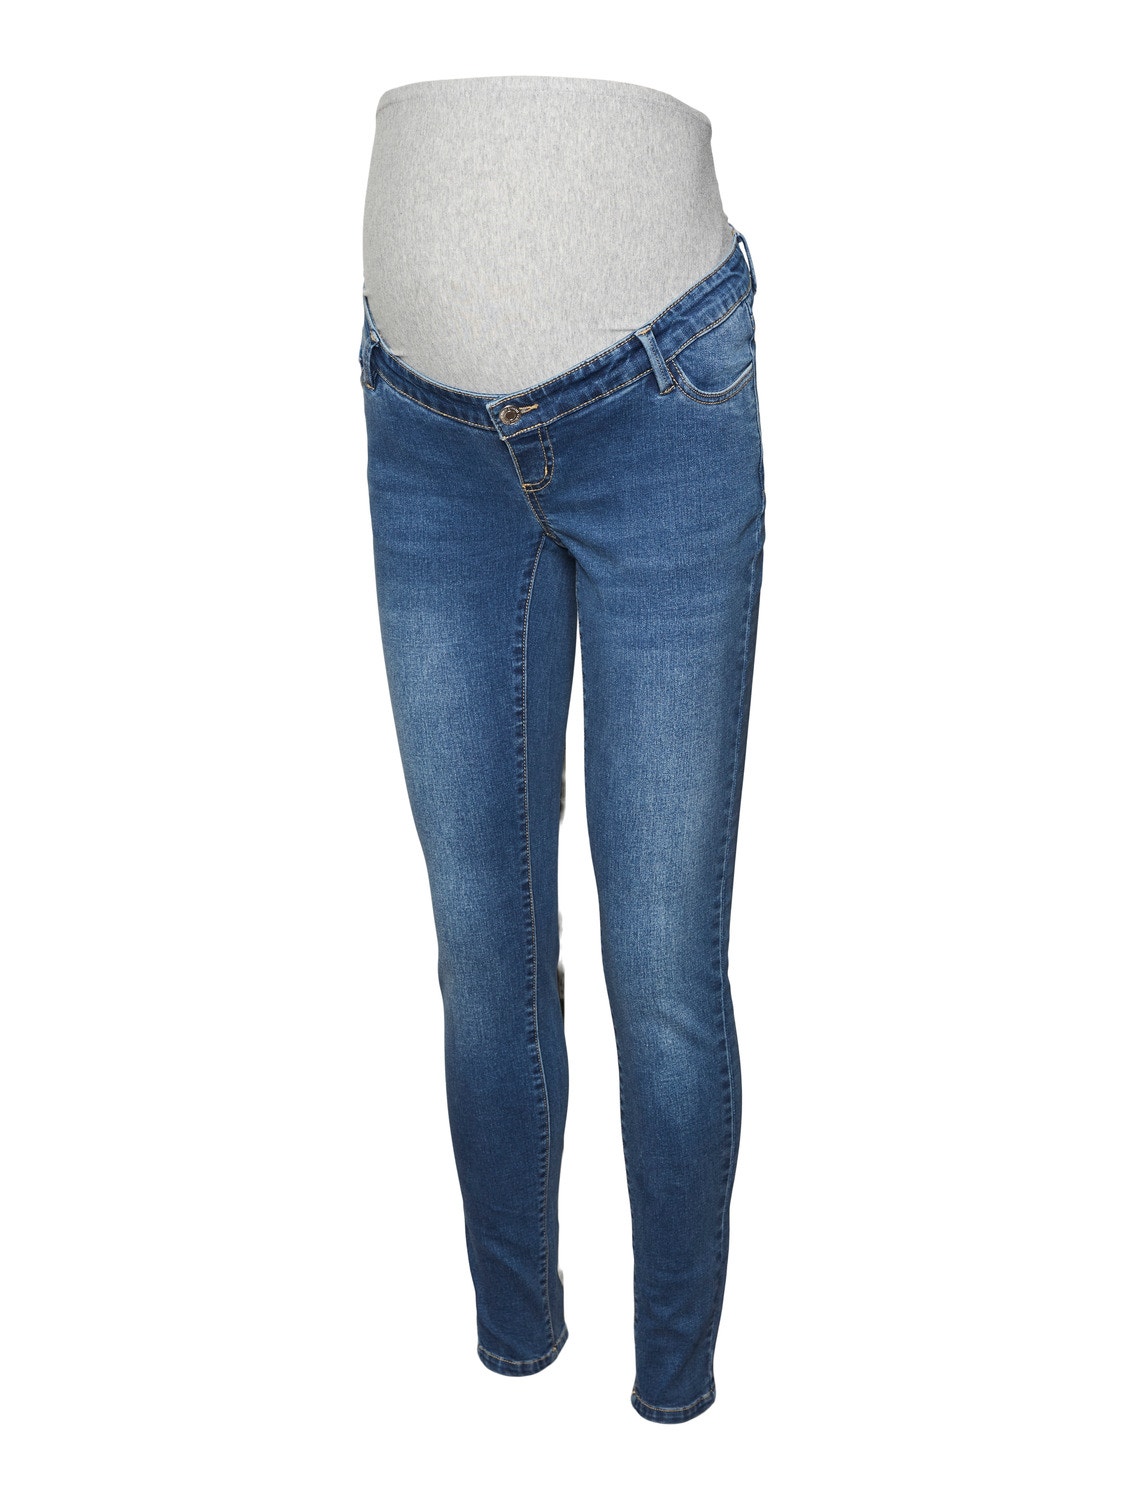 MAMA.LICIOUS Jeans Slim Fit -Medium Blue Denim - 20019087